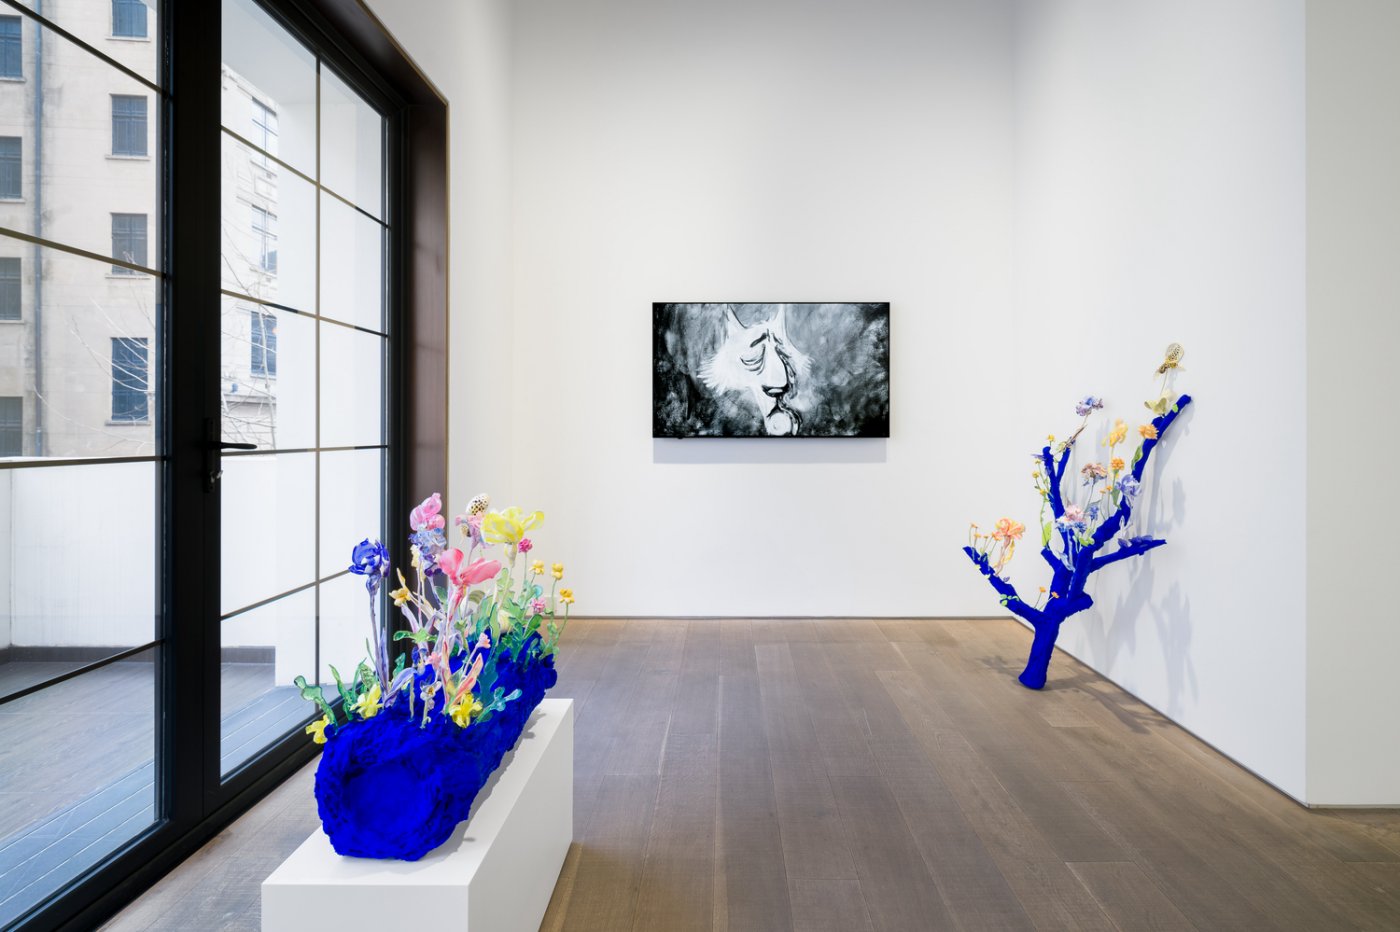 Installation image for Nathalie Djurberg & Hans Berg: A Stream Stood Still, at Lisson Gallery